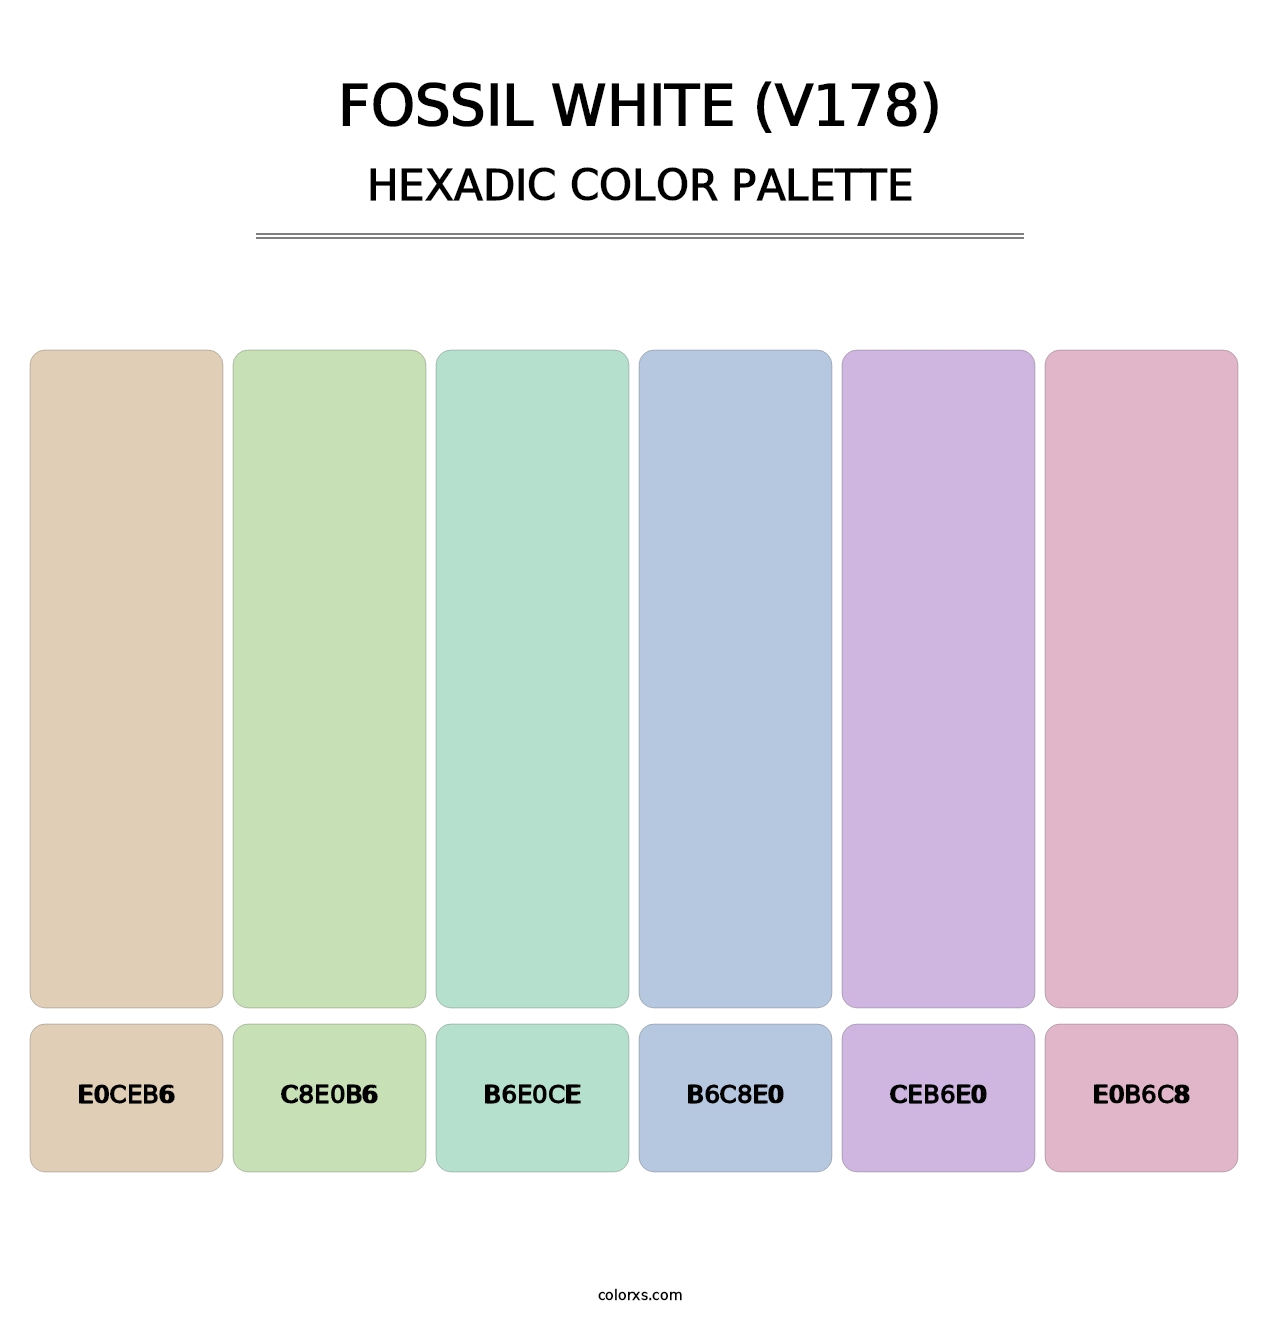 Fossil White (V178) - Hexadic Color Palette